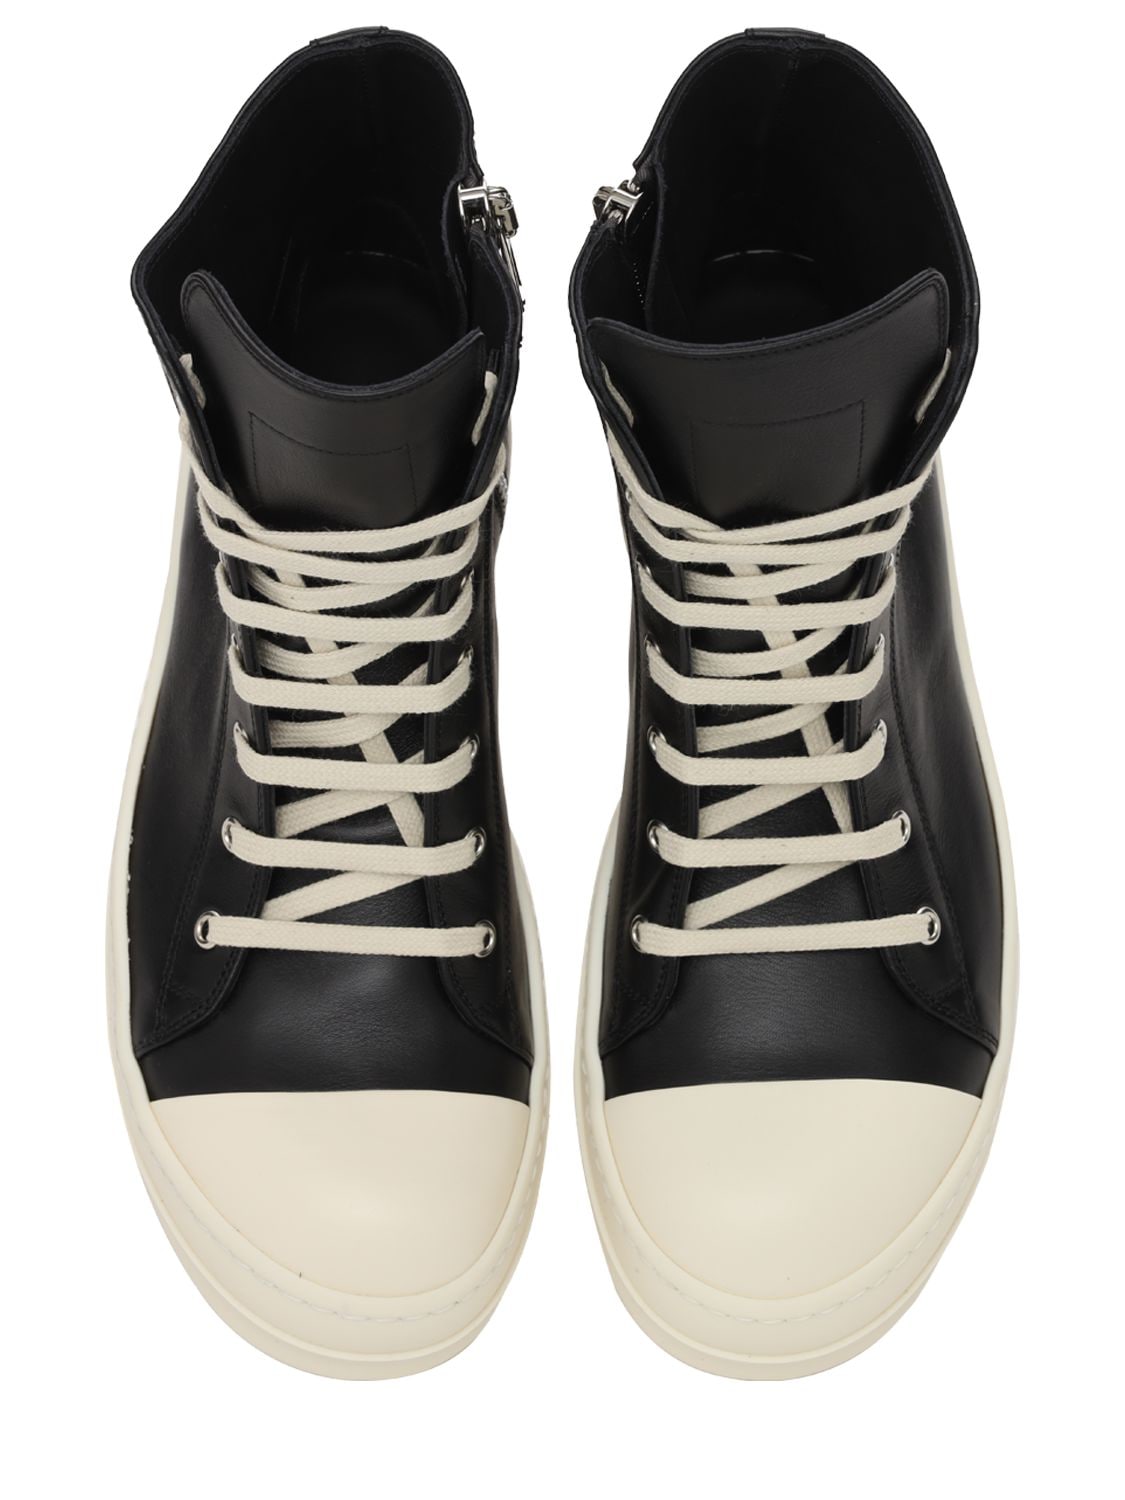 Rick Owens High Top Leather Sneakers In Black,milk,milk